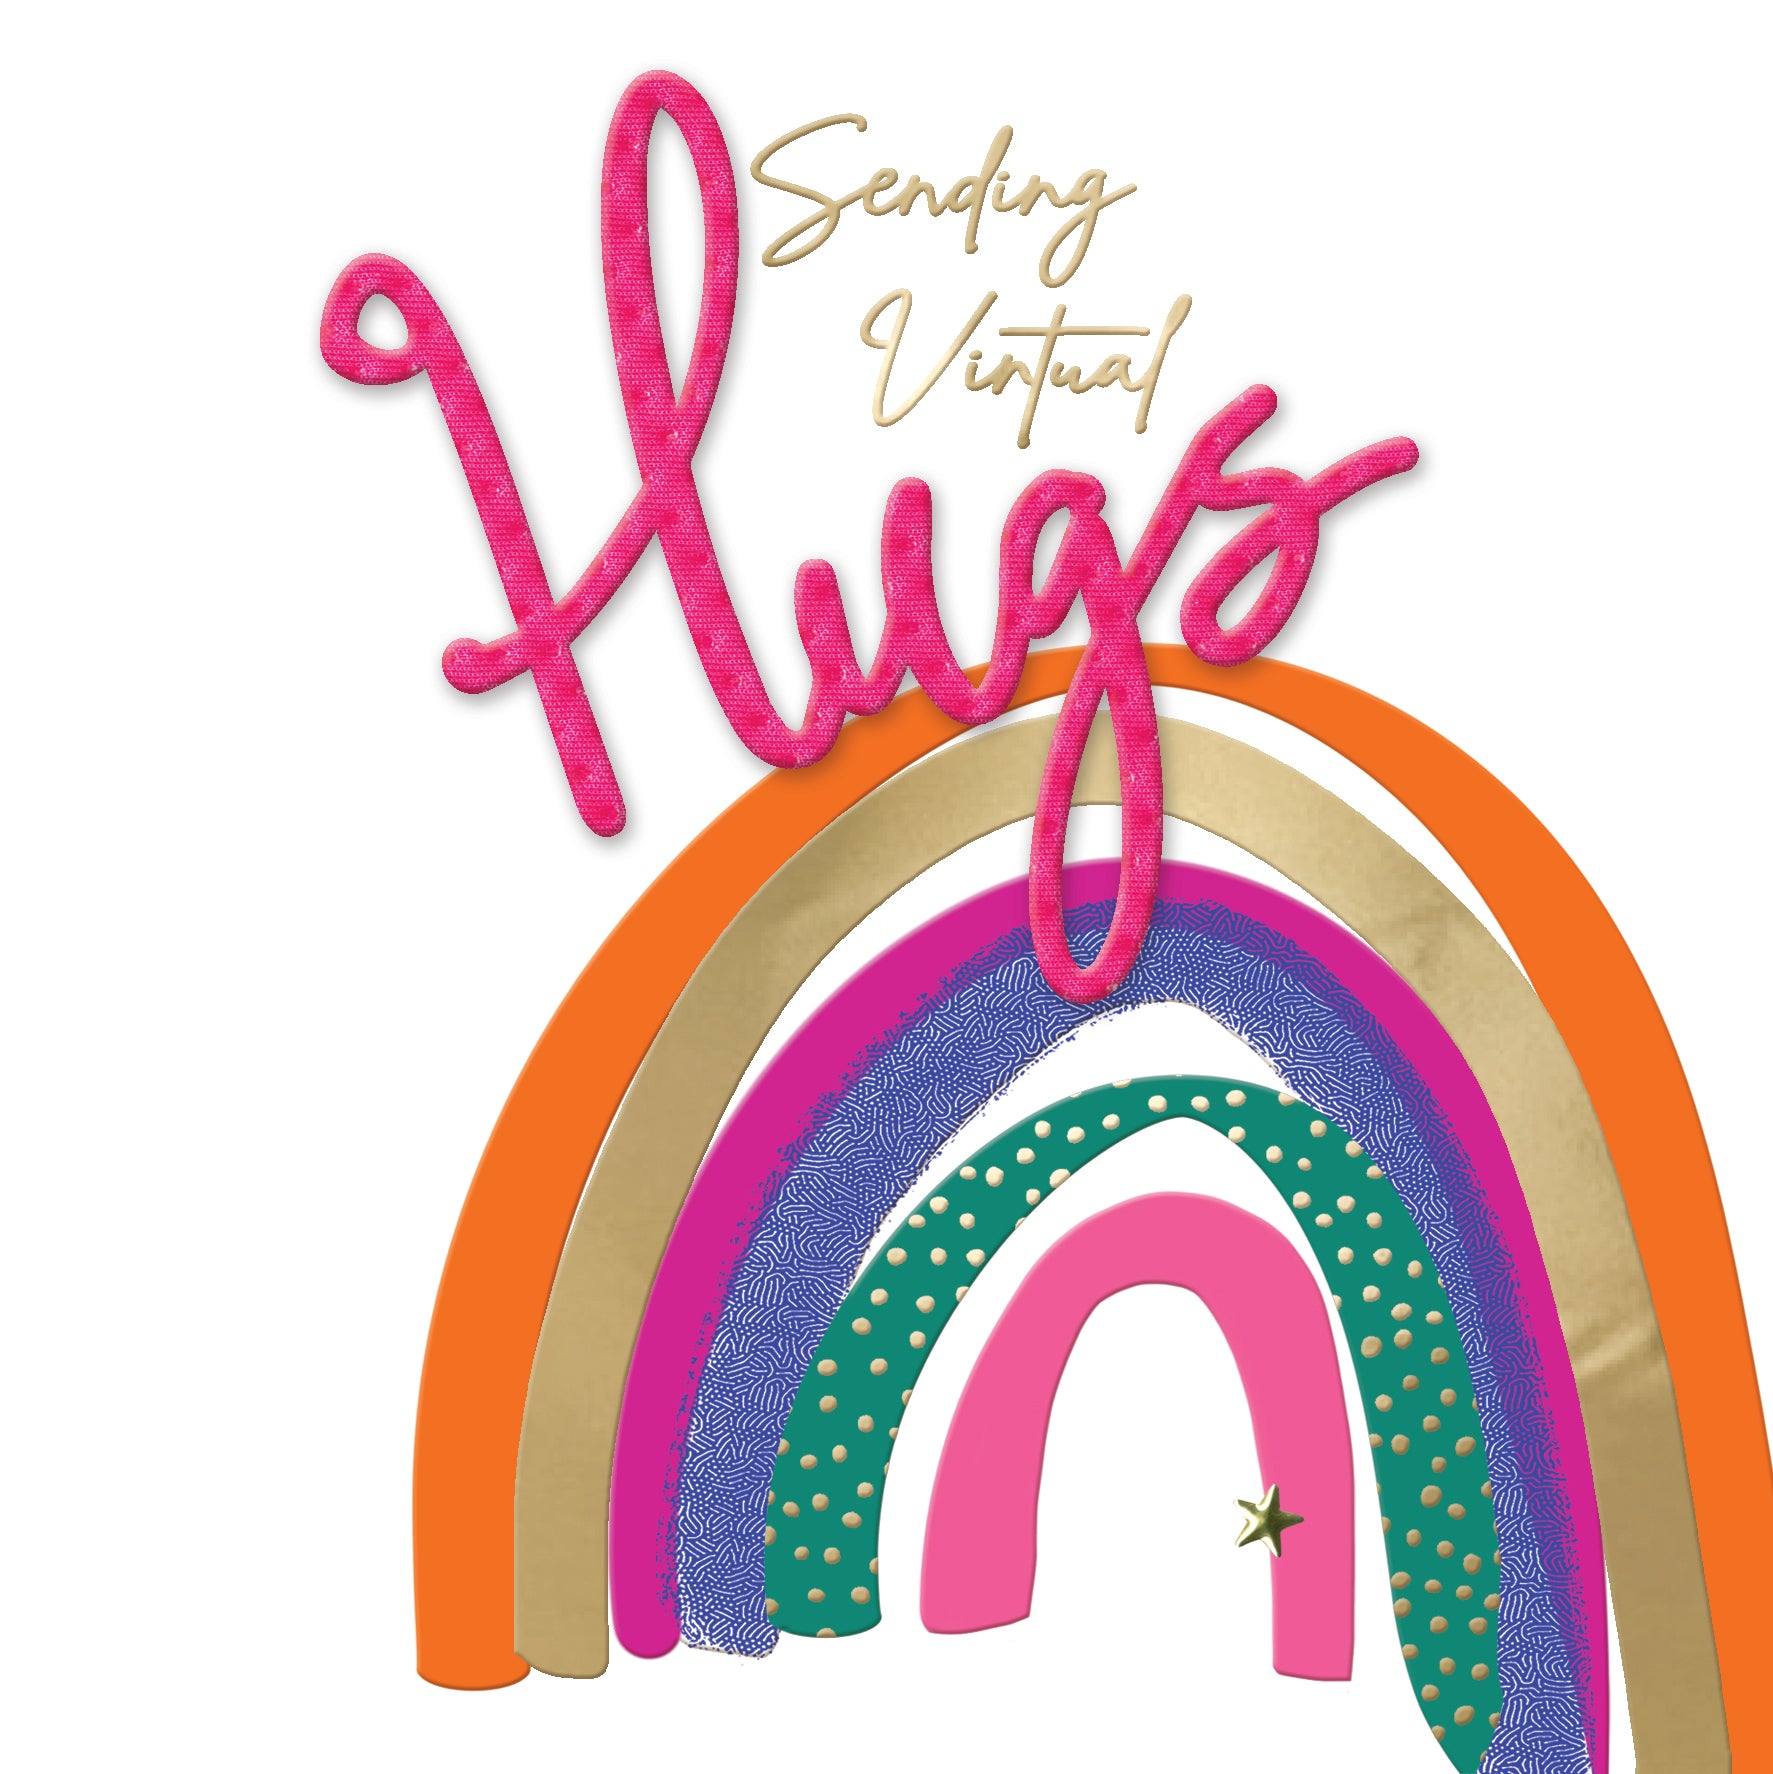 Sending Virtual Hugs Rainbow Card